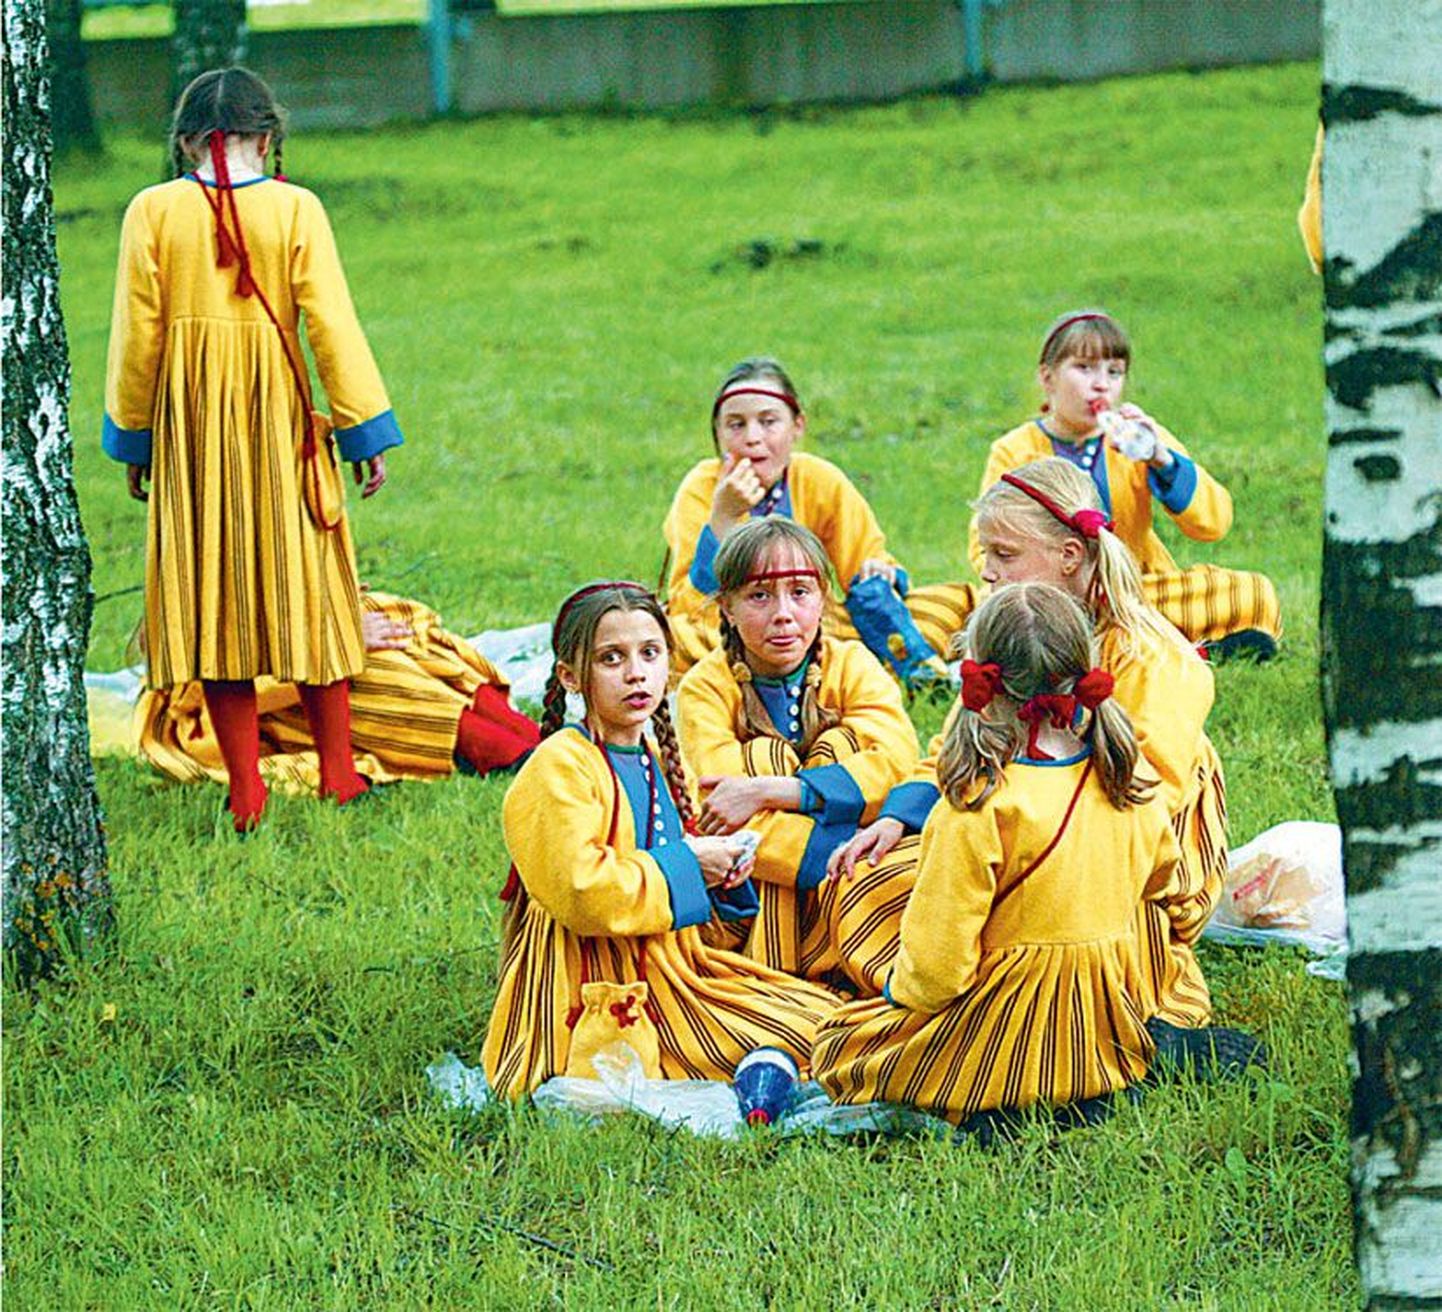 Sellele pildile on ETV mudilaskoor jäänud 2004. aasta Tartu laulupeol puhkehetke pidamas.